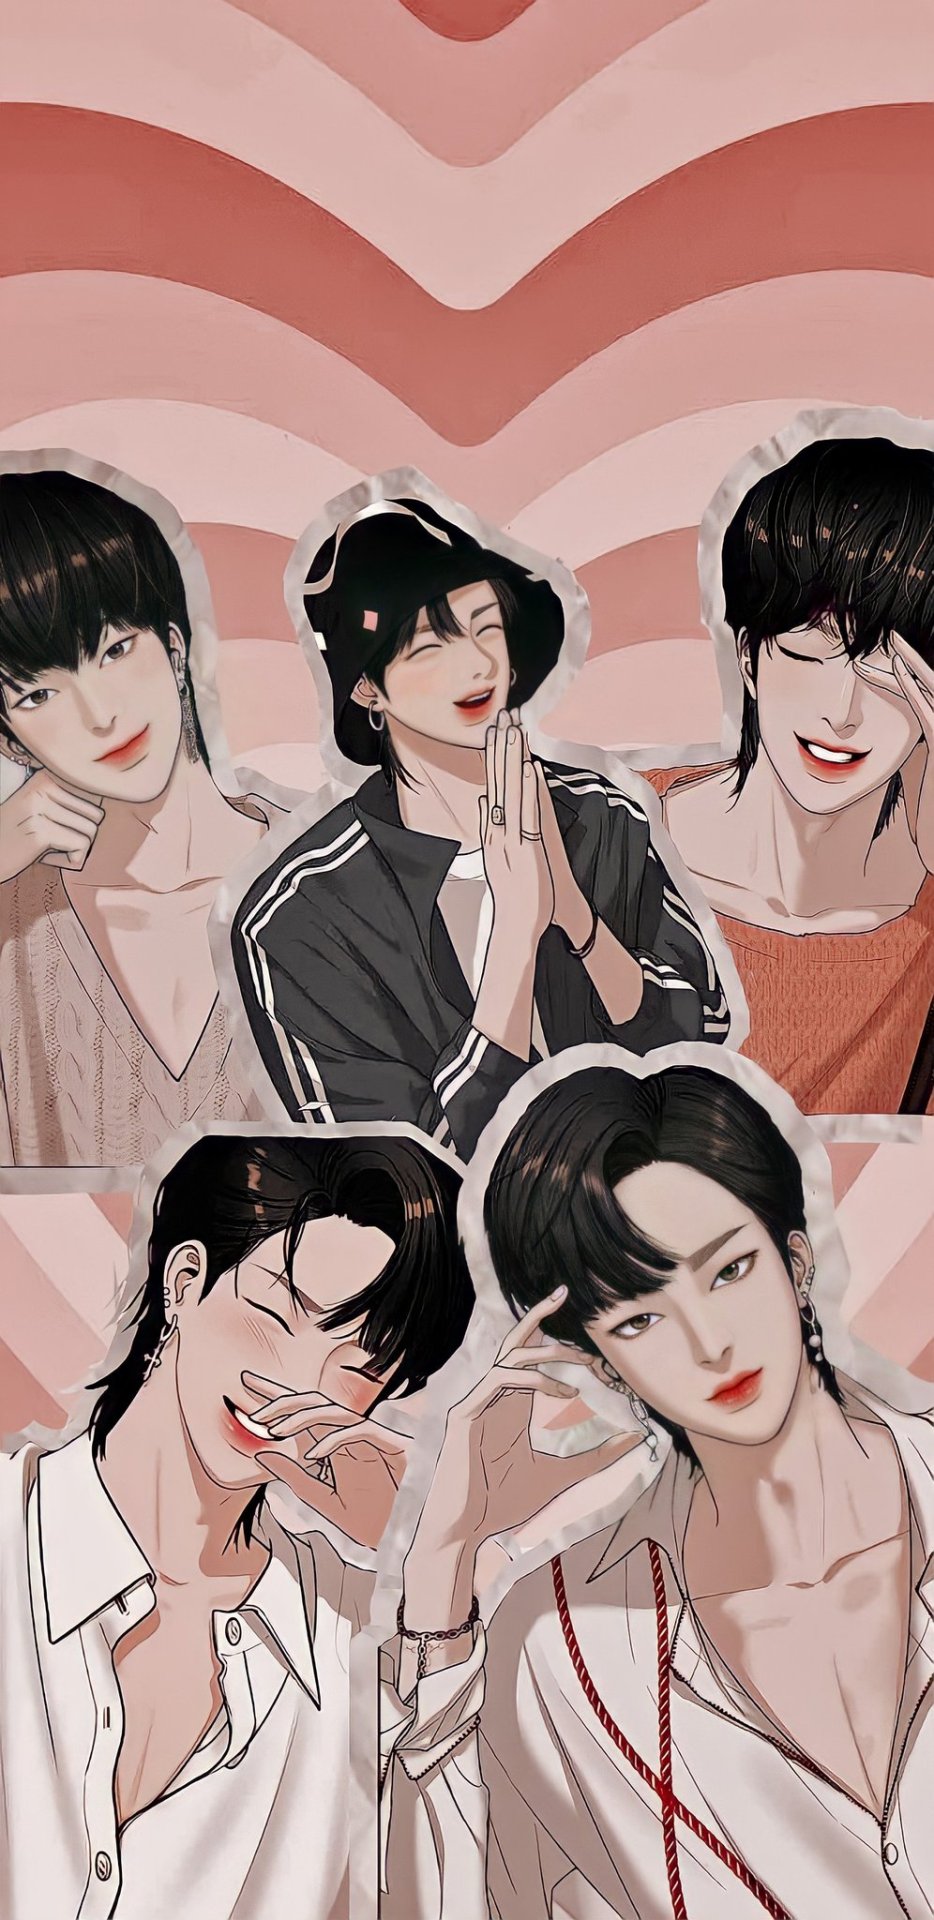 Han Seojun Wallpapers